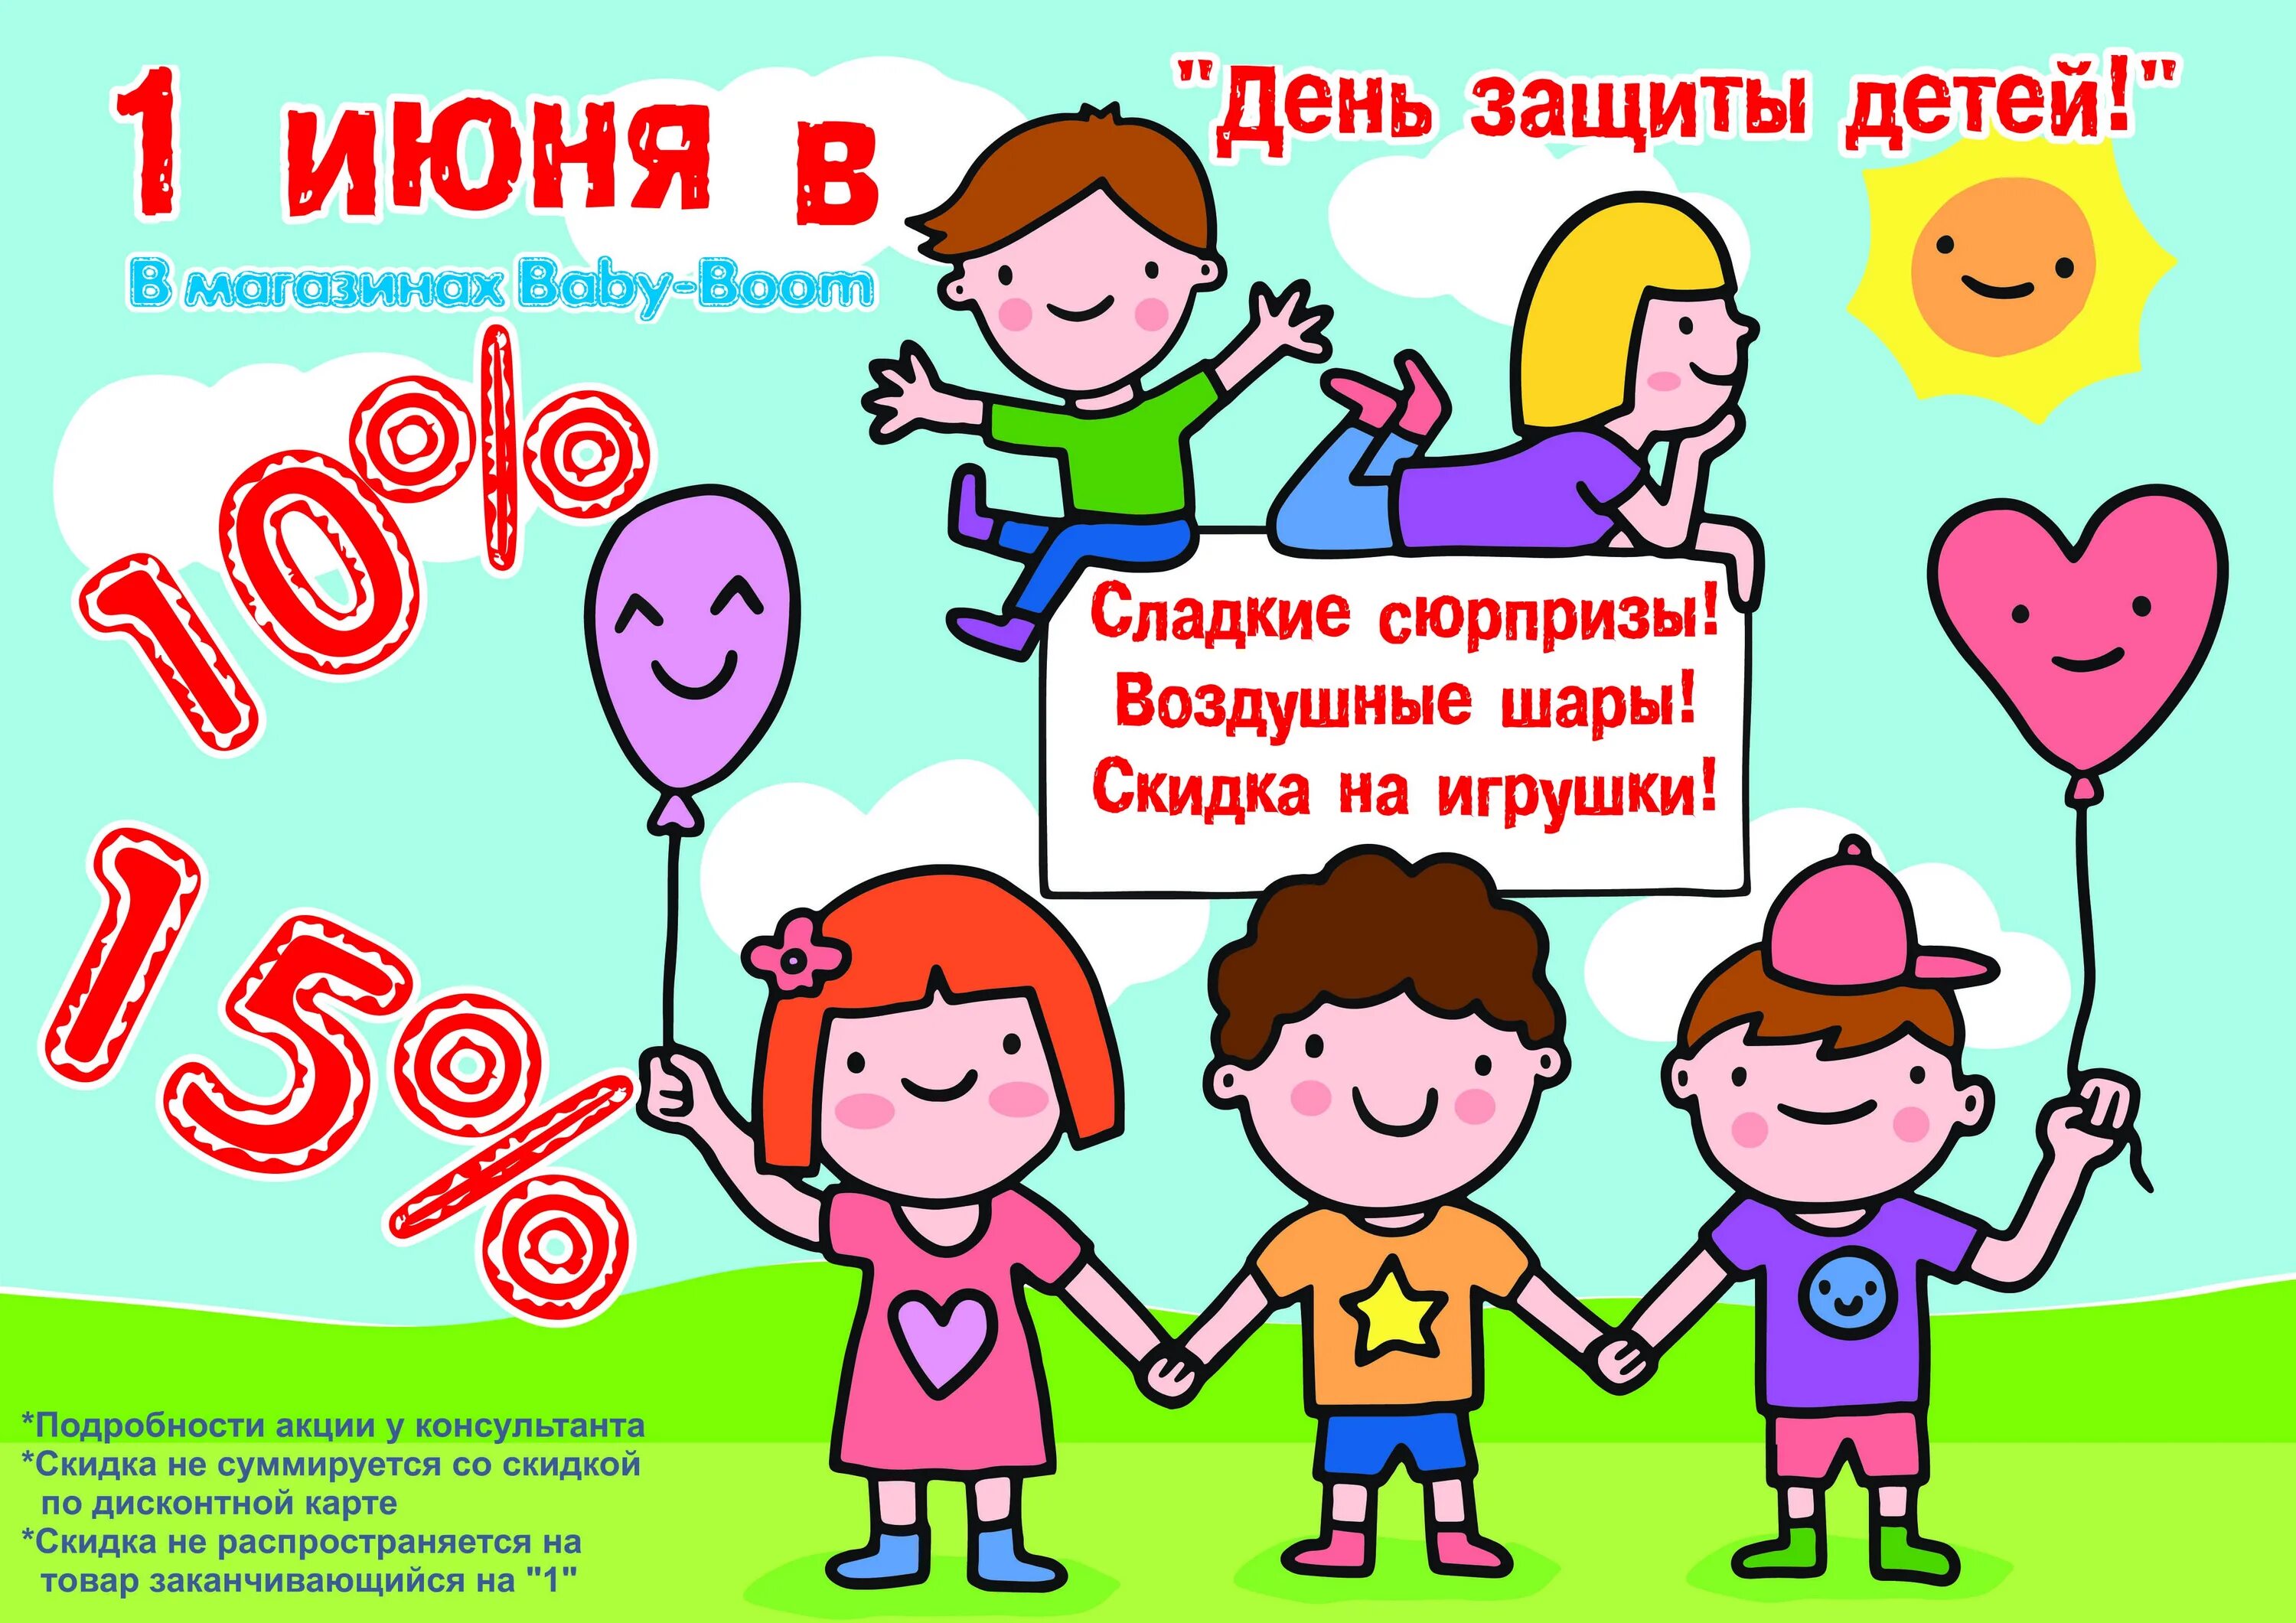 Акция 1 июня. День защиты детей скидки. Акция ко Дню защиты детей. 1 Июня день защиты детей. Акции ко Дню защиты детей в магазинах.